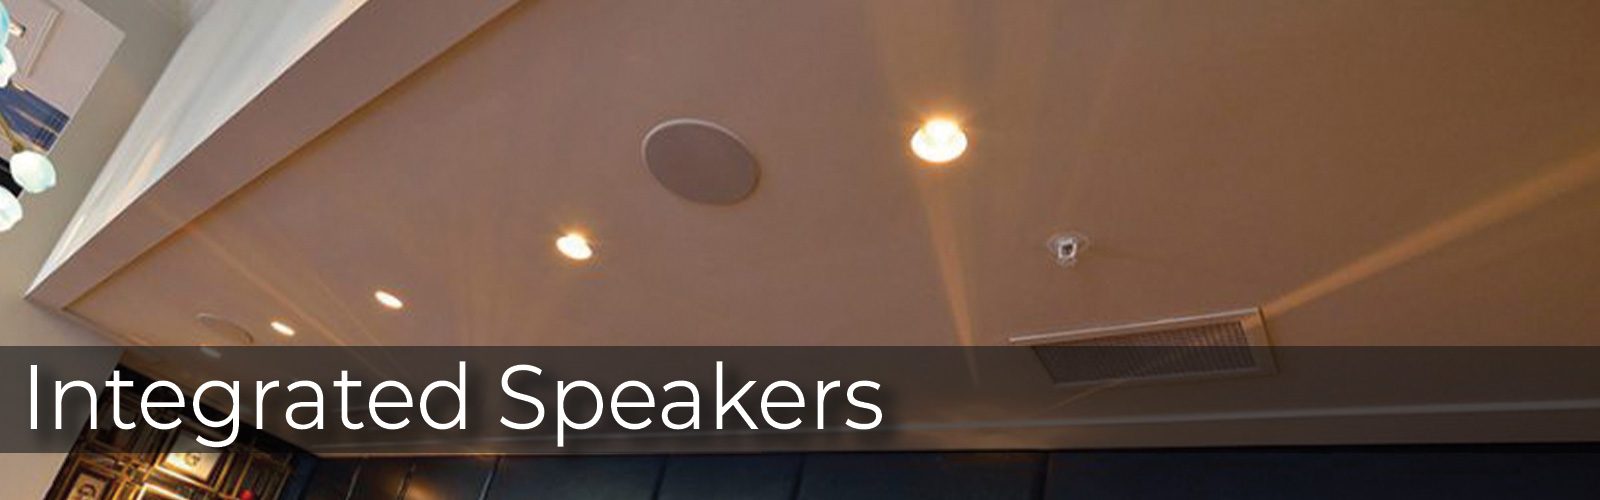 speakers-header